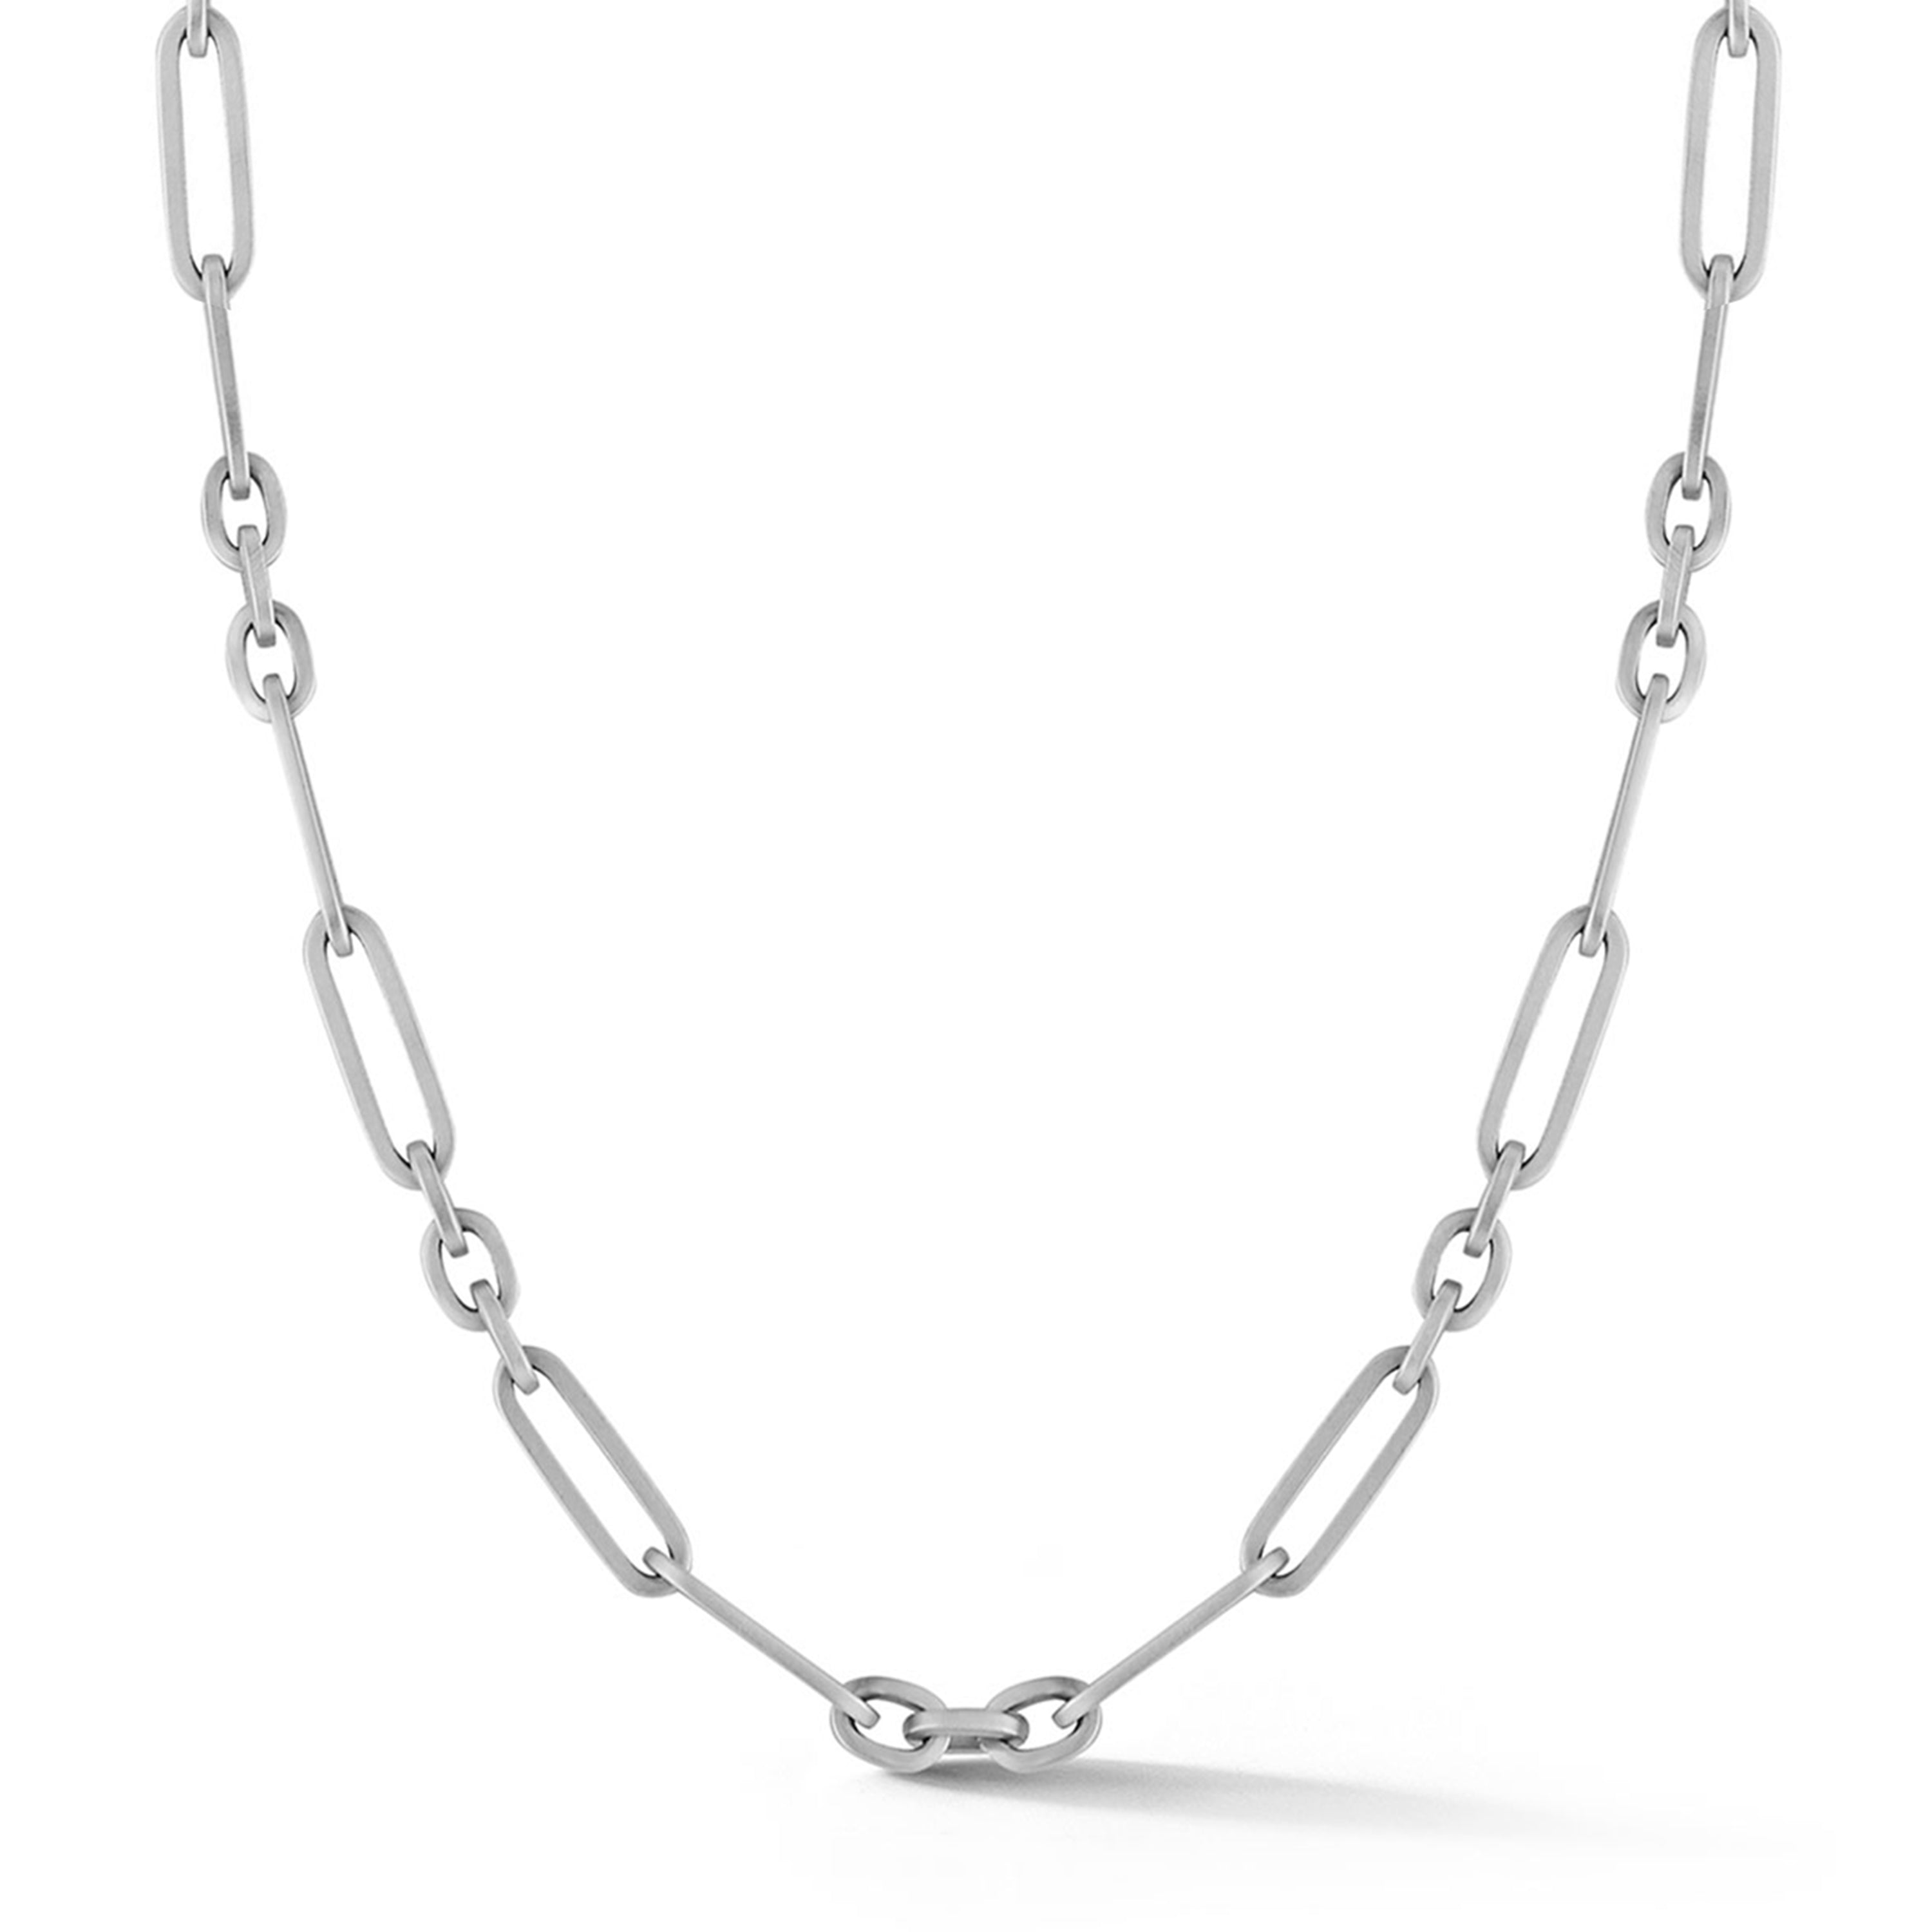 Paige Chain Necklace